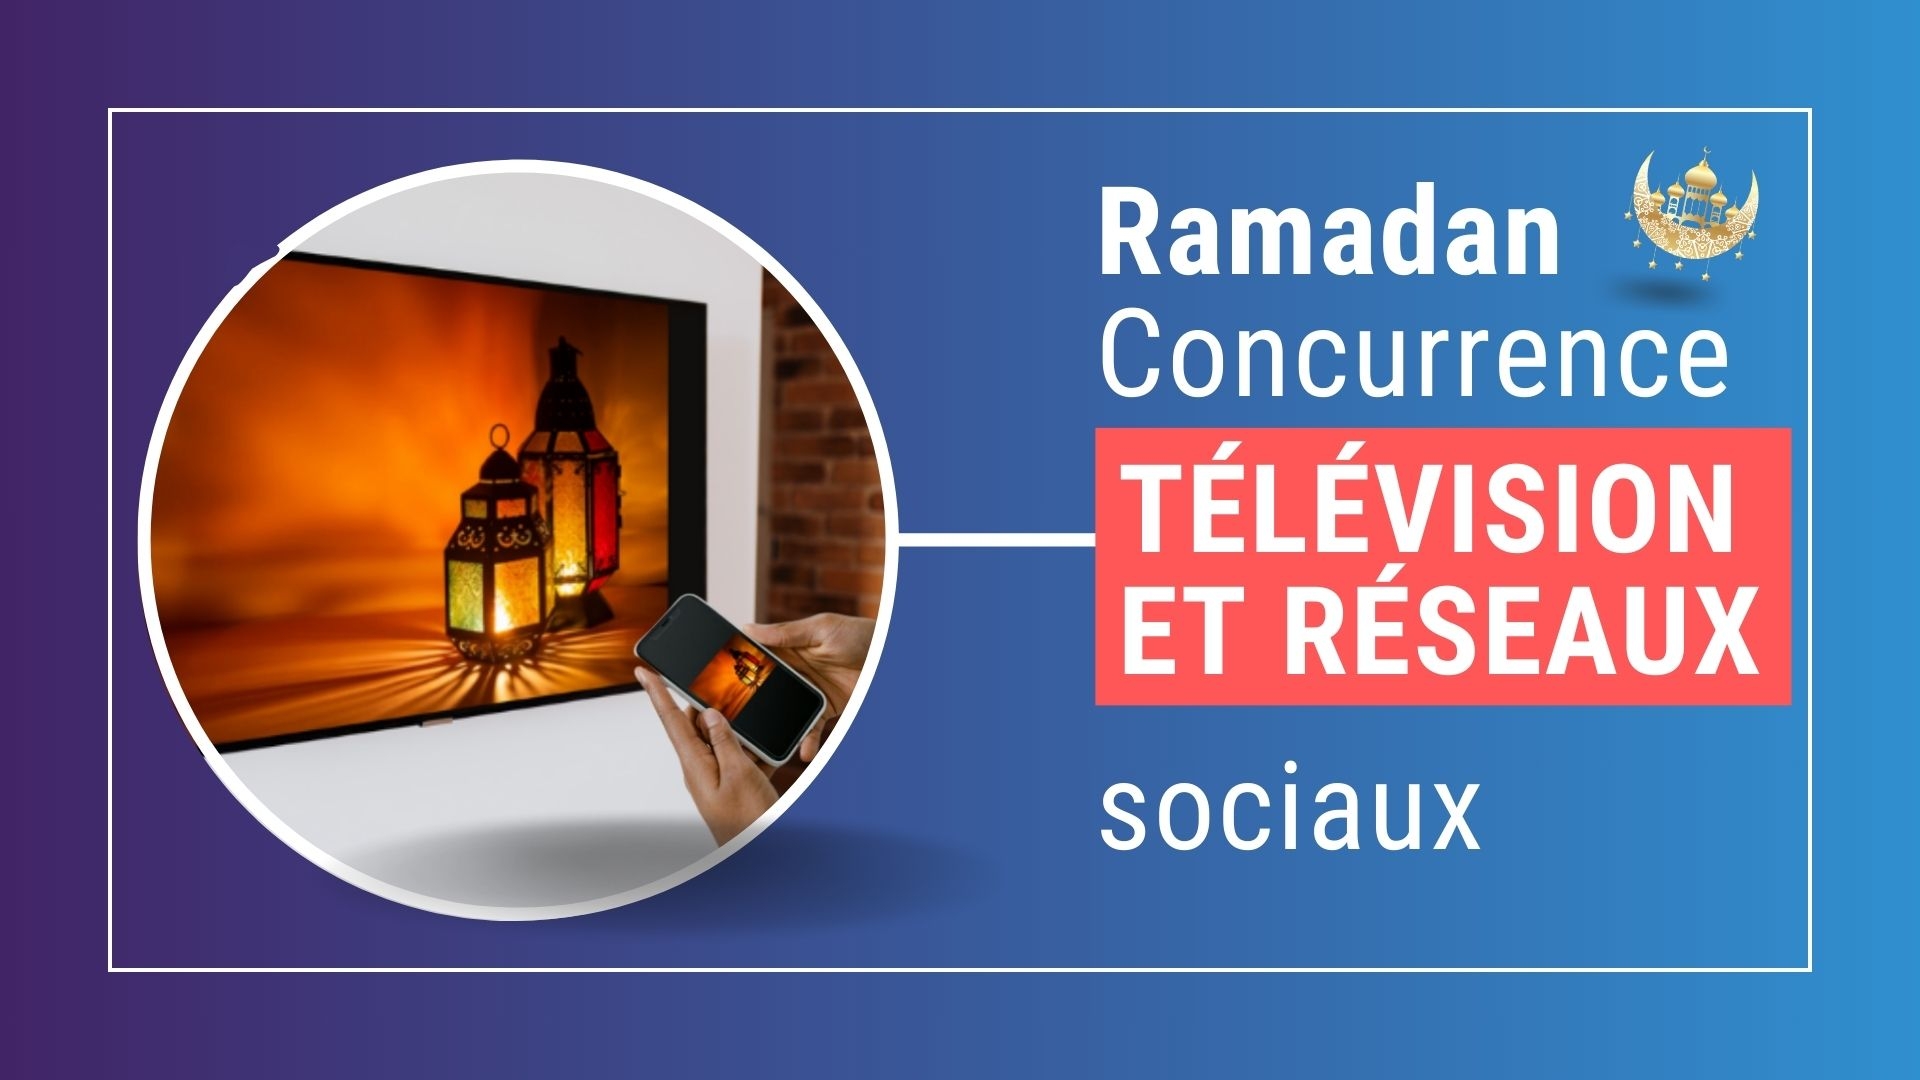 Télévision et réseaux sociaux : la course aux audiences pendant le ramadan